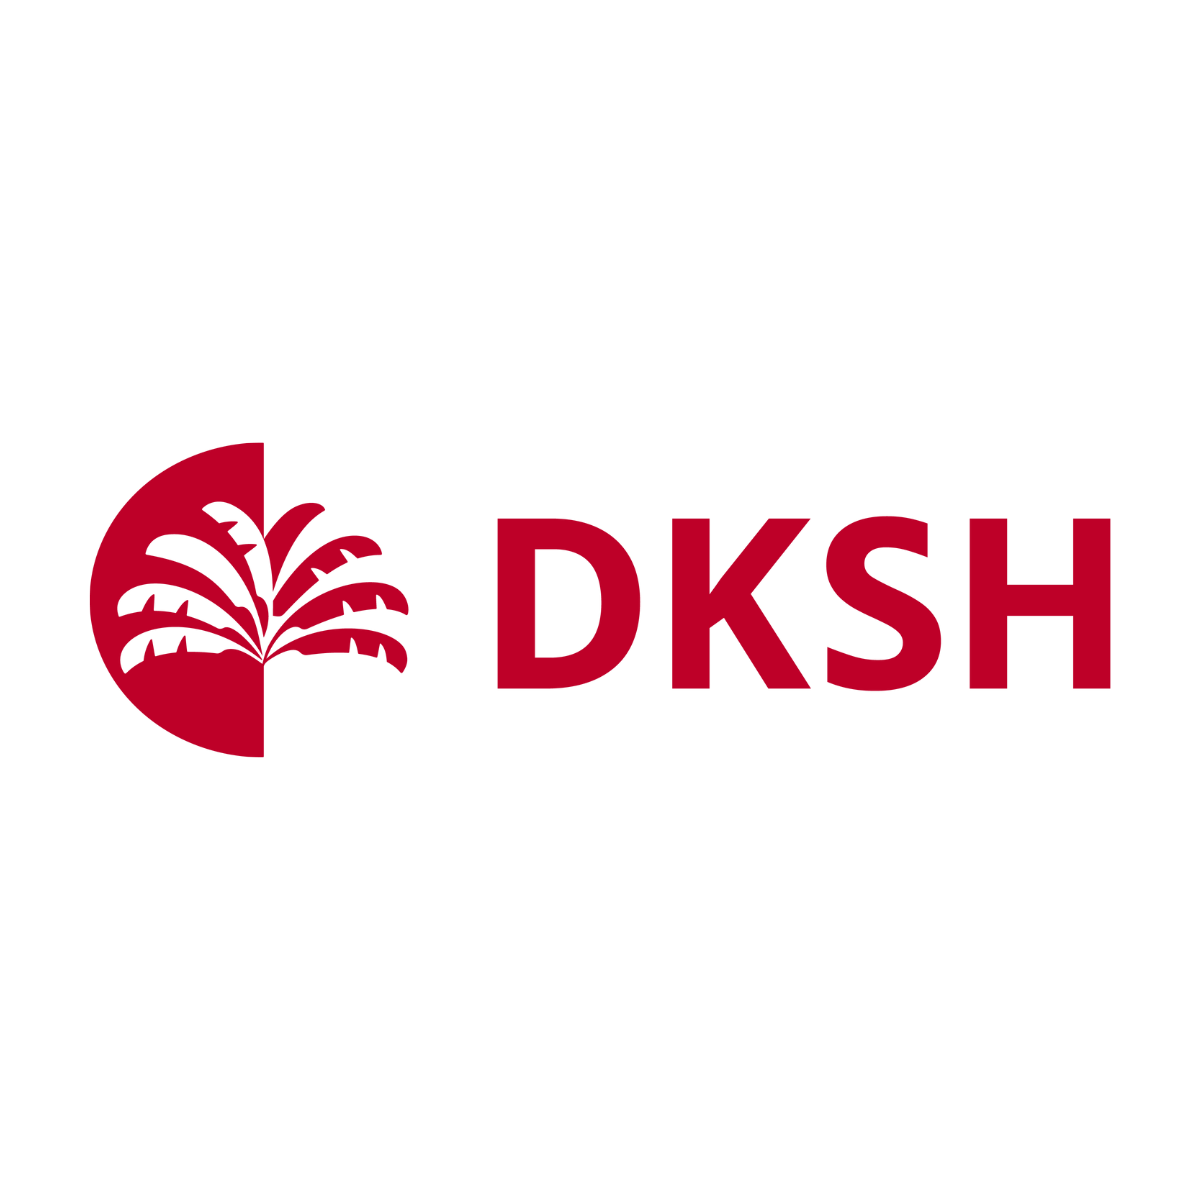 dksh logo